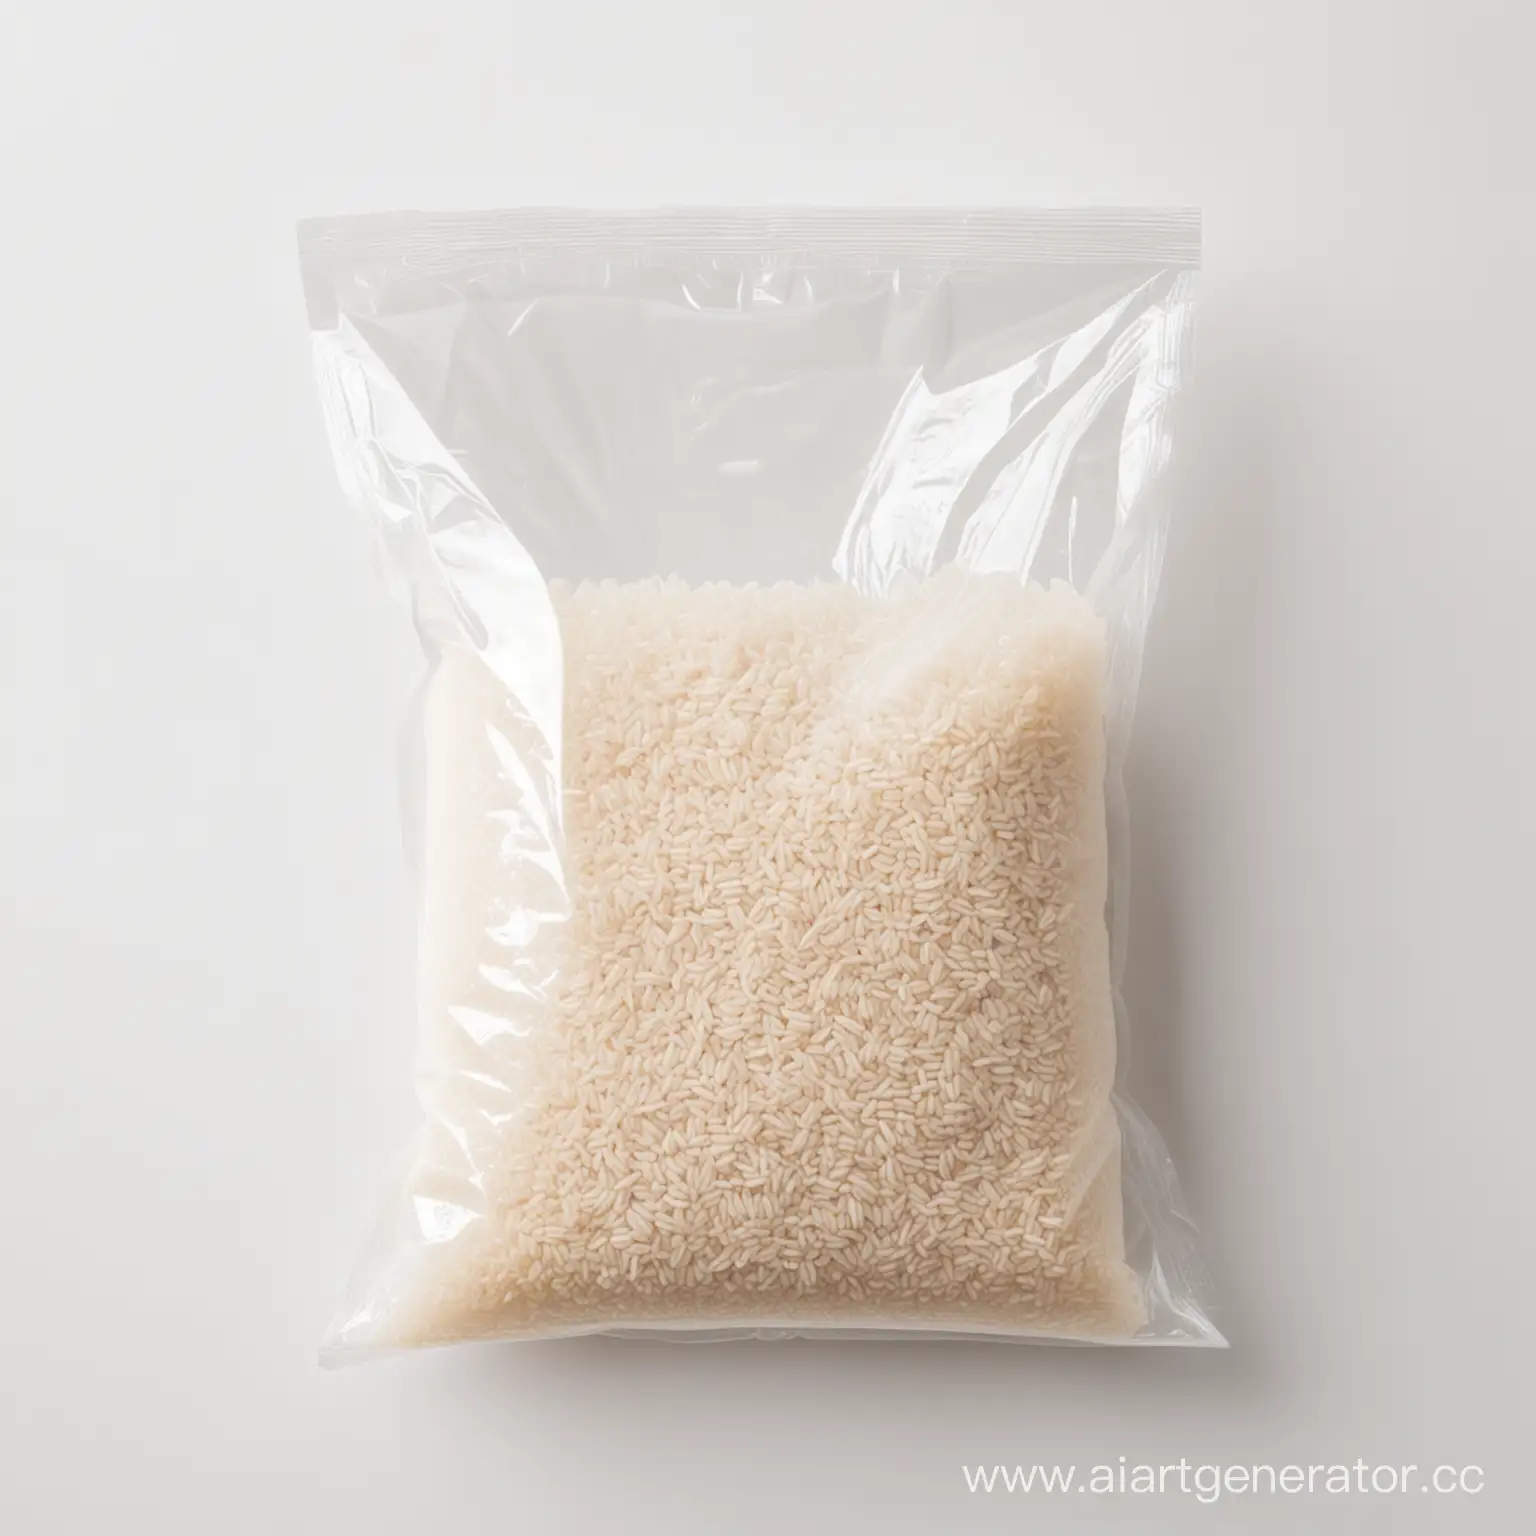 рис с прозрачном полиэтиленовом пакете на белом фоне